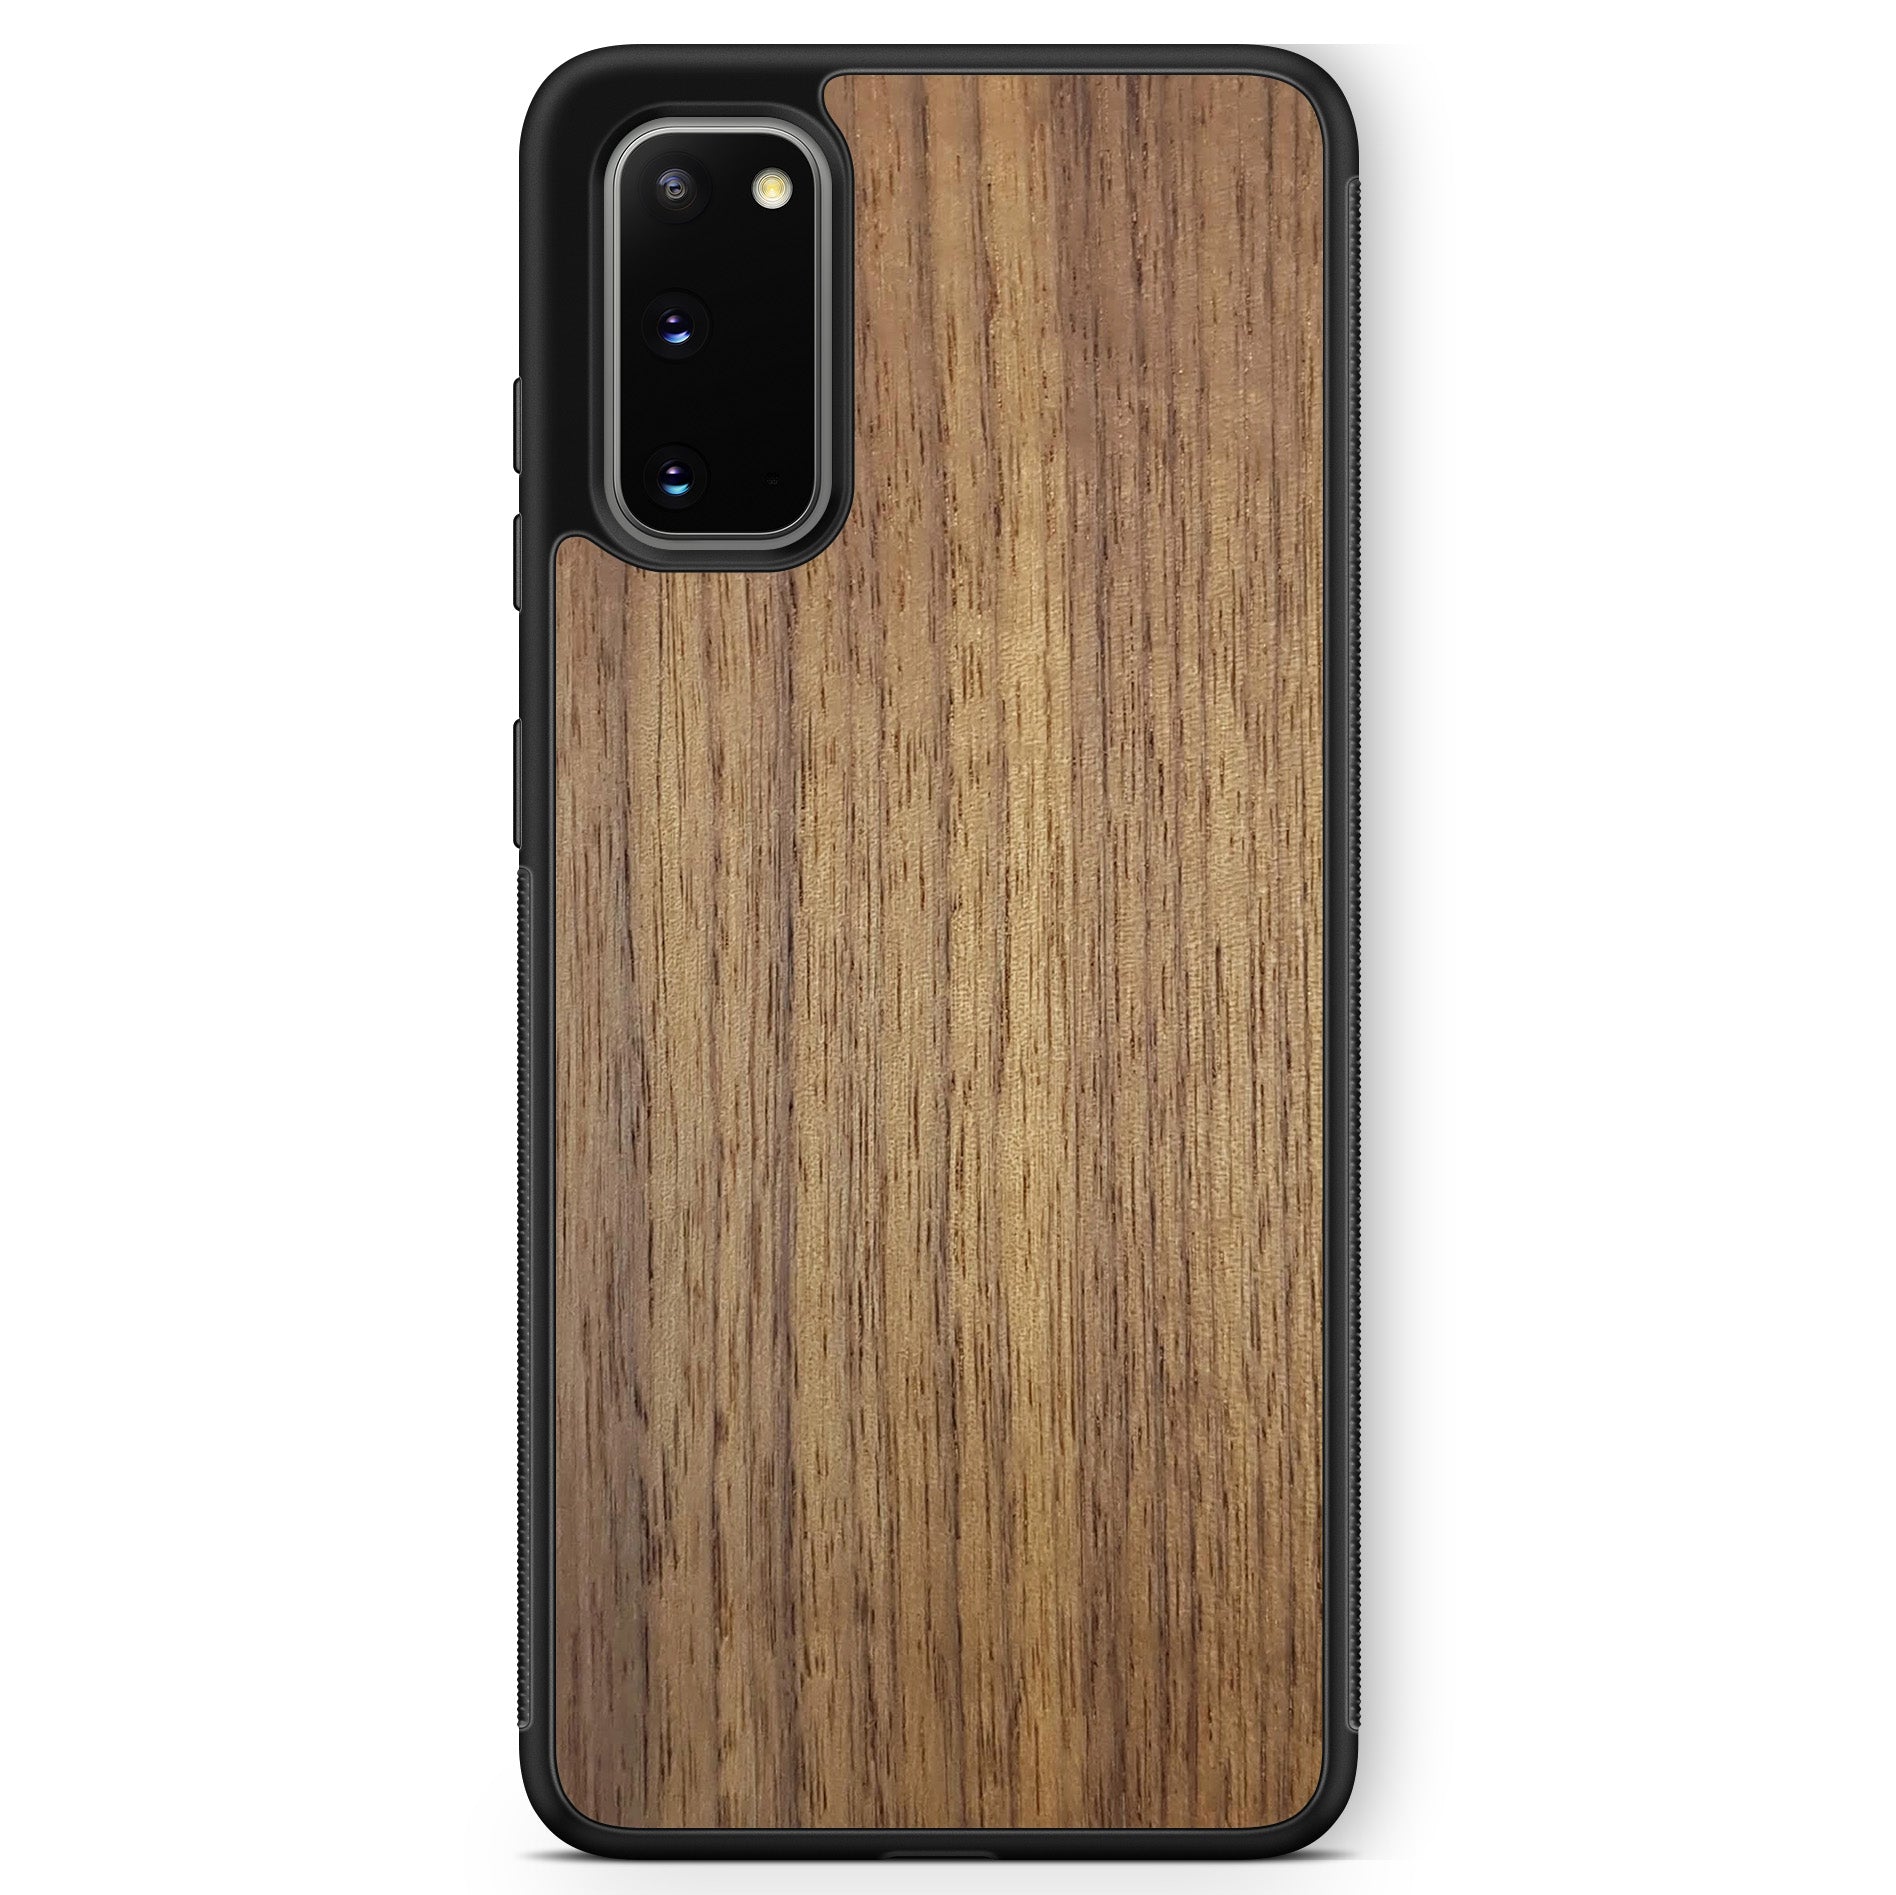 Funda de madera para teléfono Samsung S20 de nogal americano